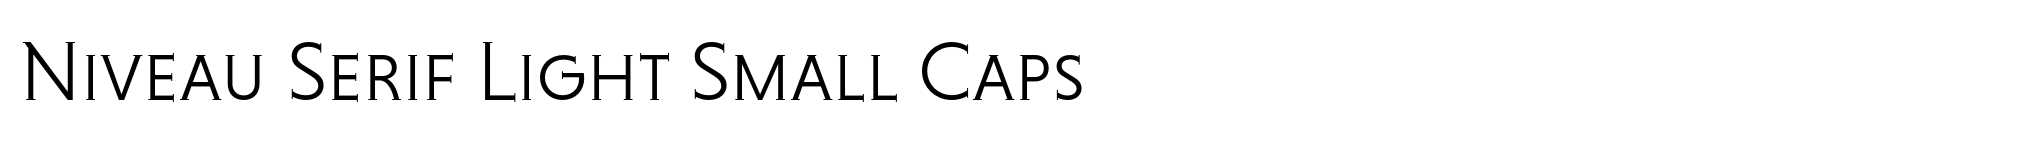 Niveau Serif Light Small Caps image